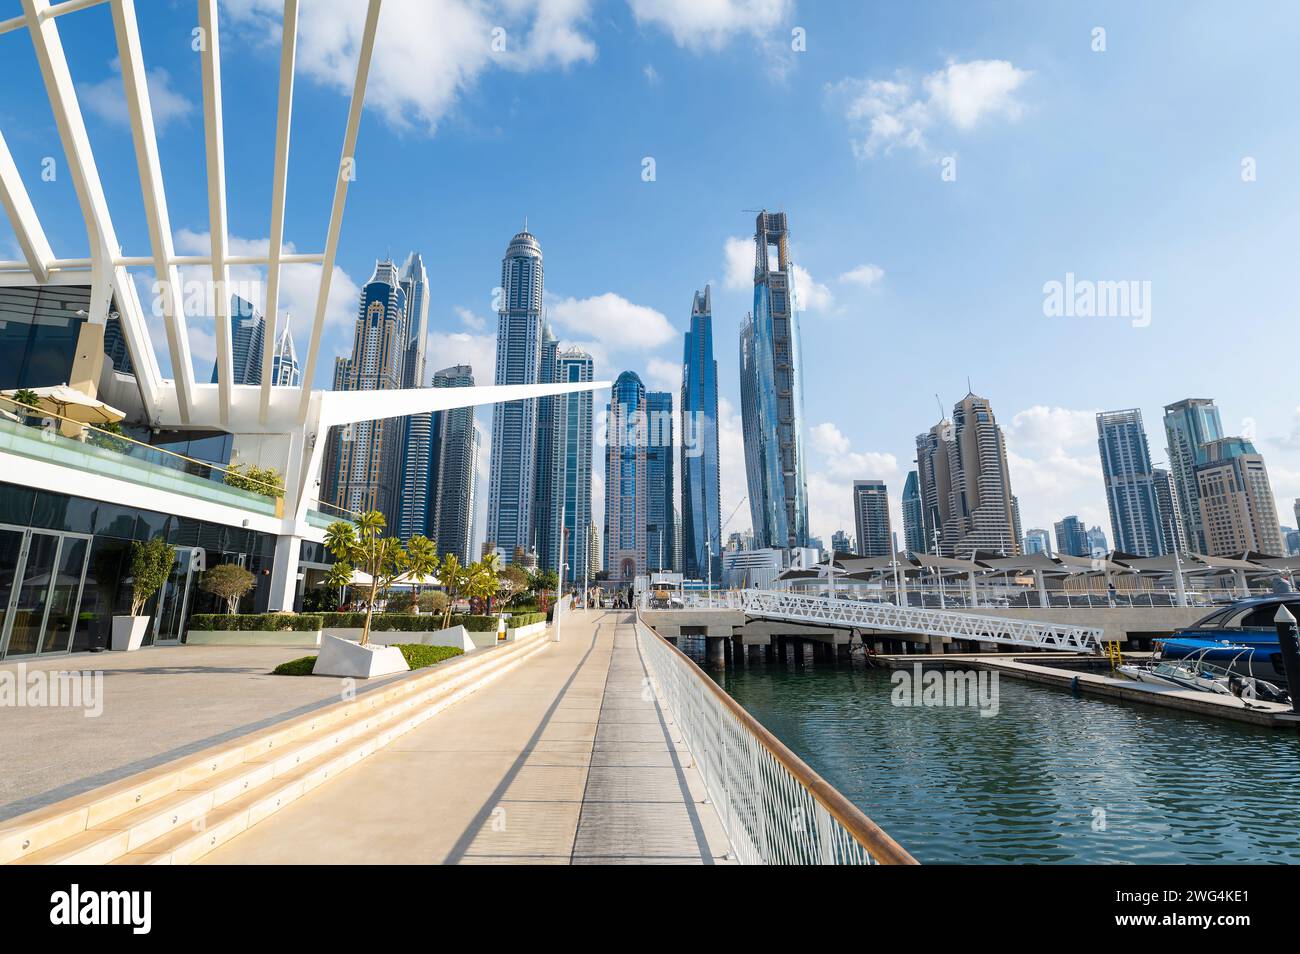 Porto turistico di Dubai in una giornata di sole negli Emirati Arabi Uniti, con una vivace metropoli, incontra acque tranquille mentre le barche navigano sotto un maestoso skyline della città, incorniciato da Foto Stock